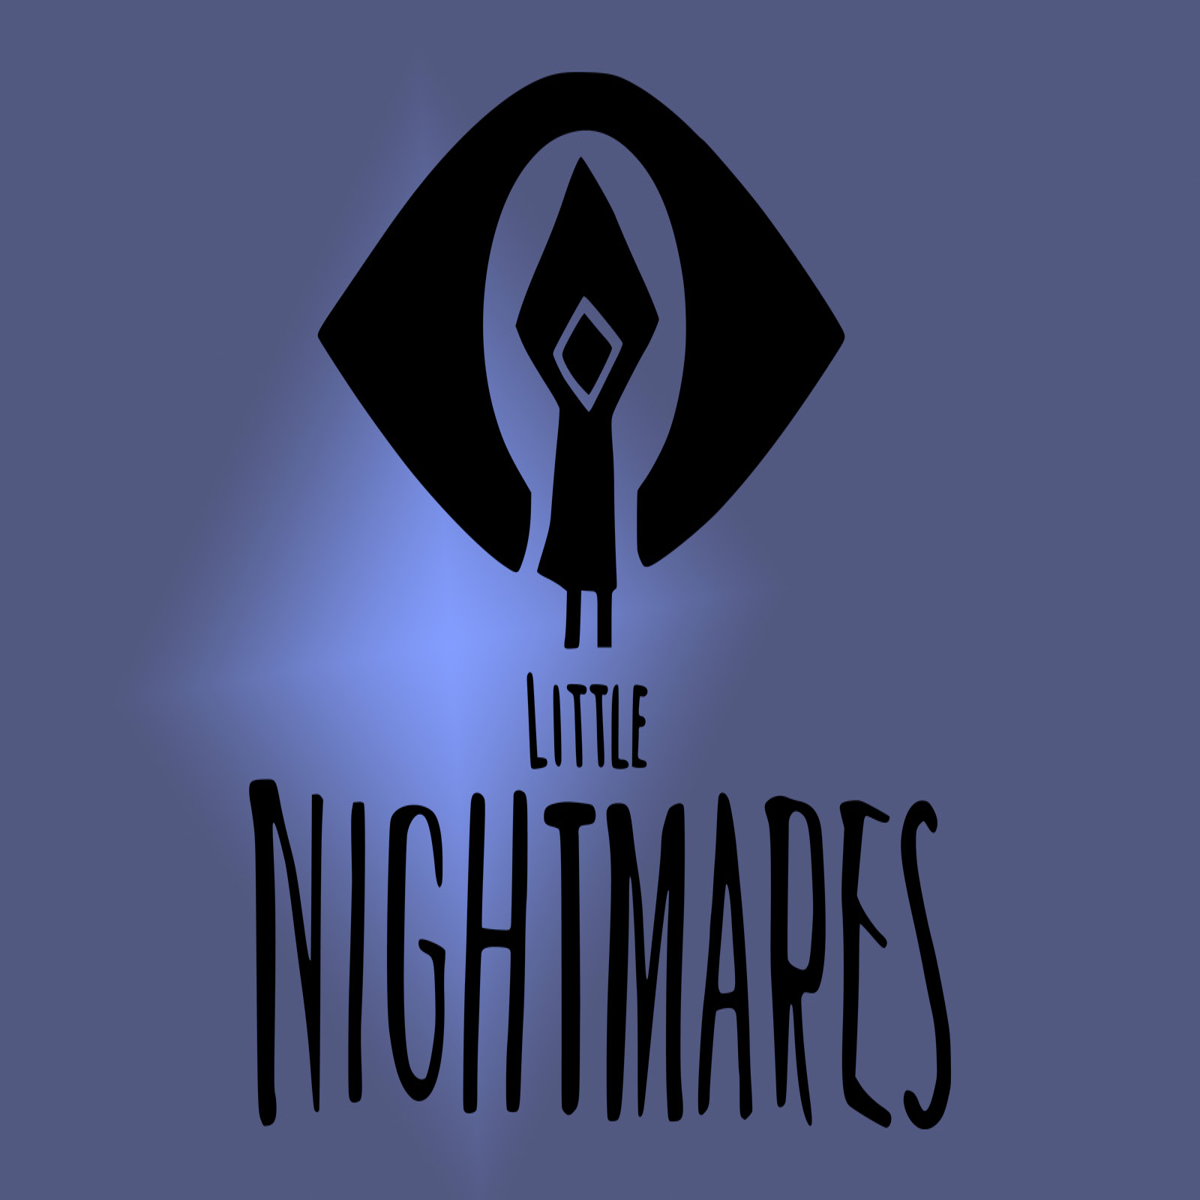 Little Nightmares 3 in development from Dark Pictures studio Supermassive